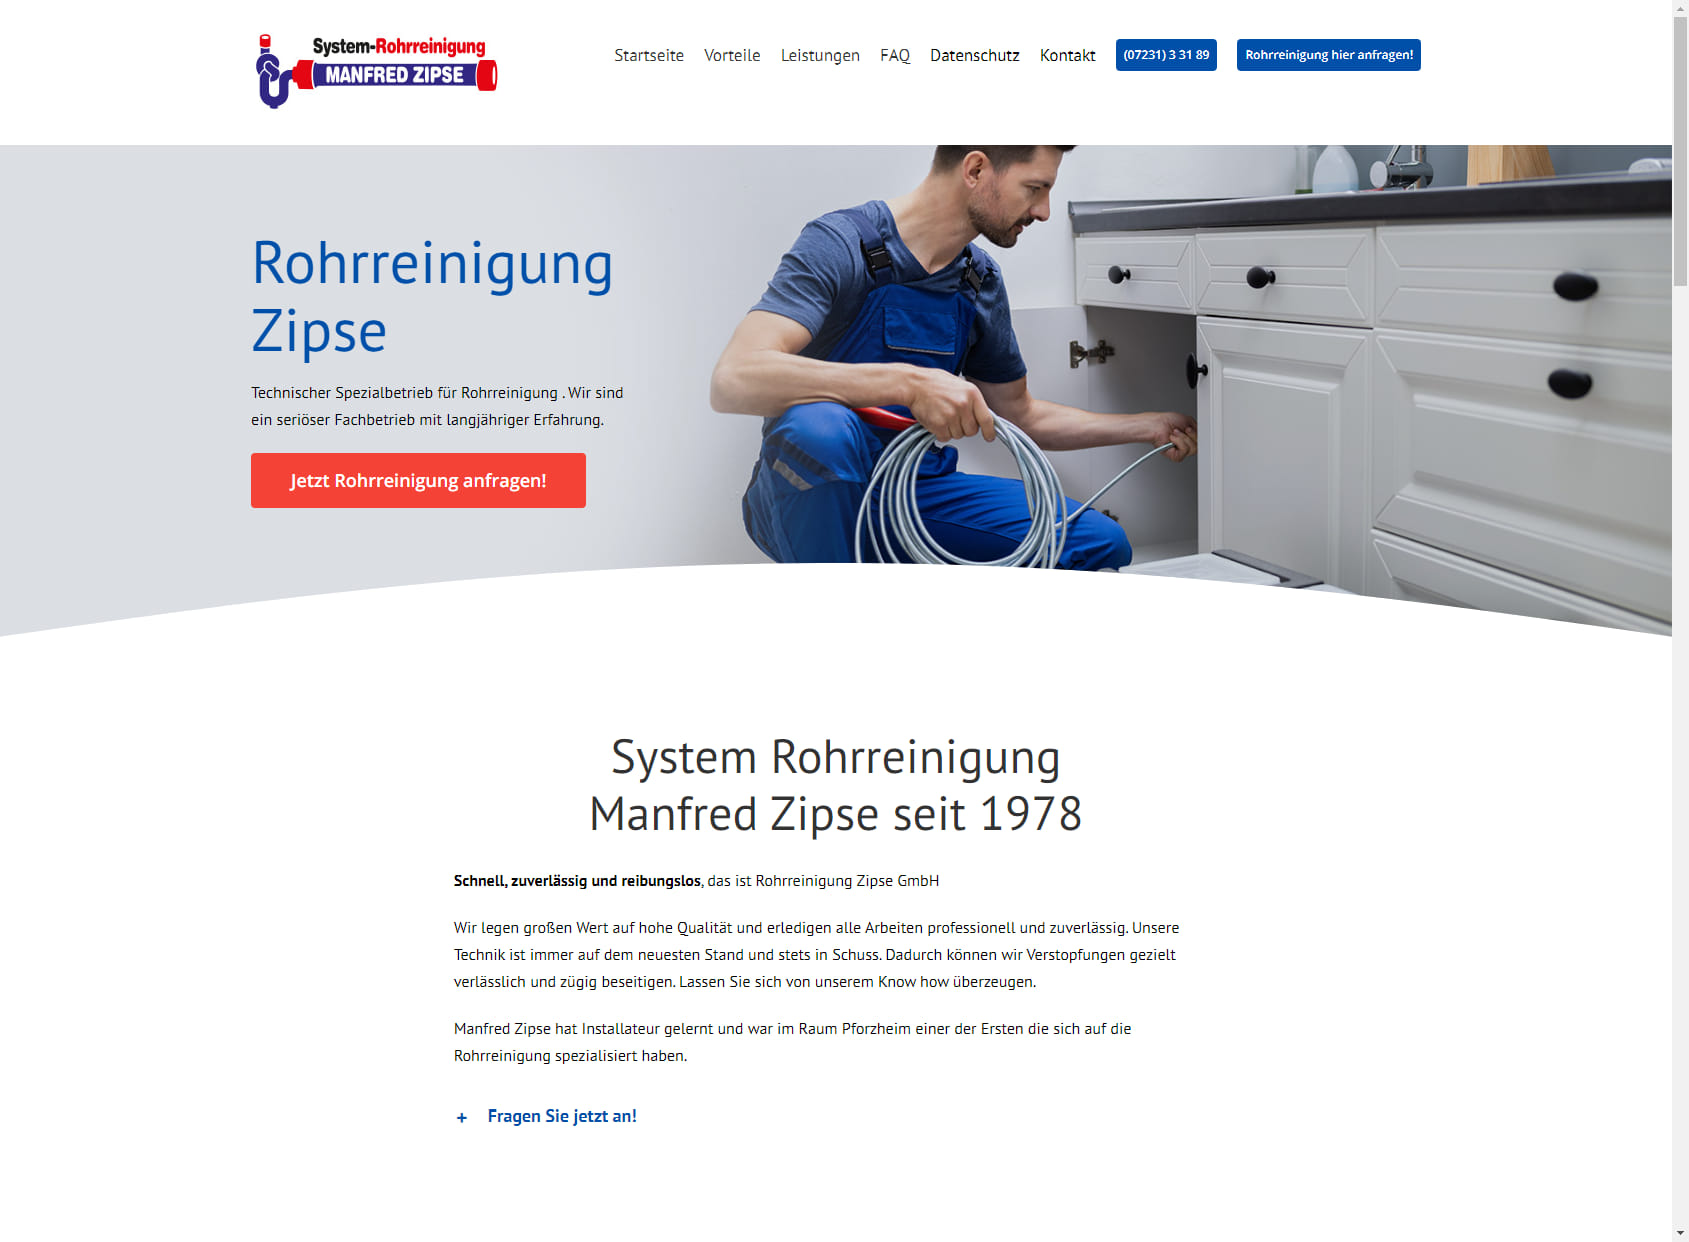 Rohrreinigung Zipse GmbH - seit 1978